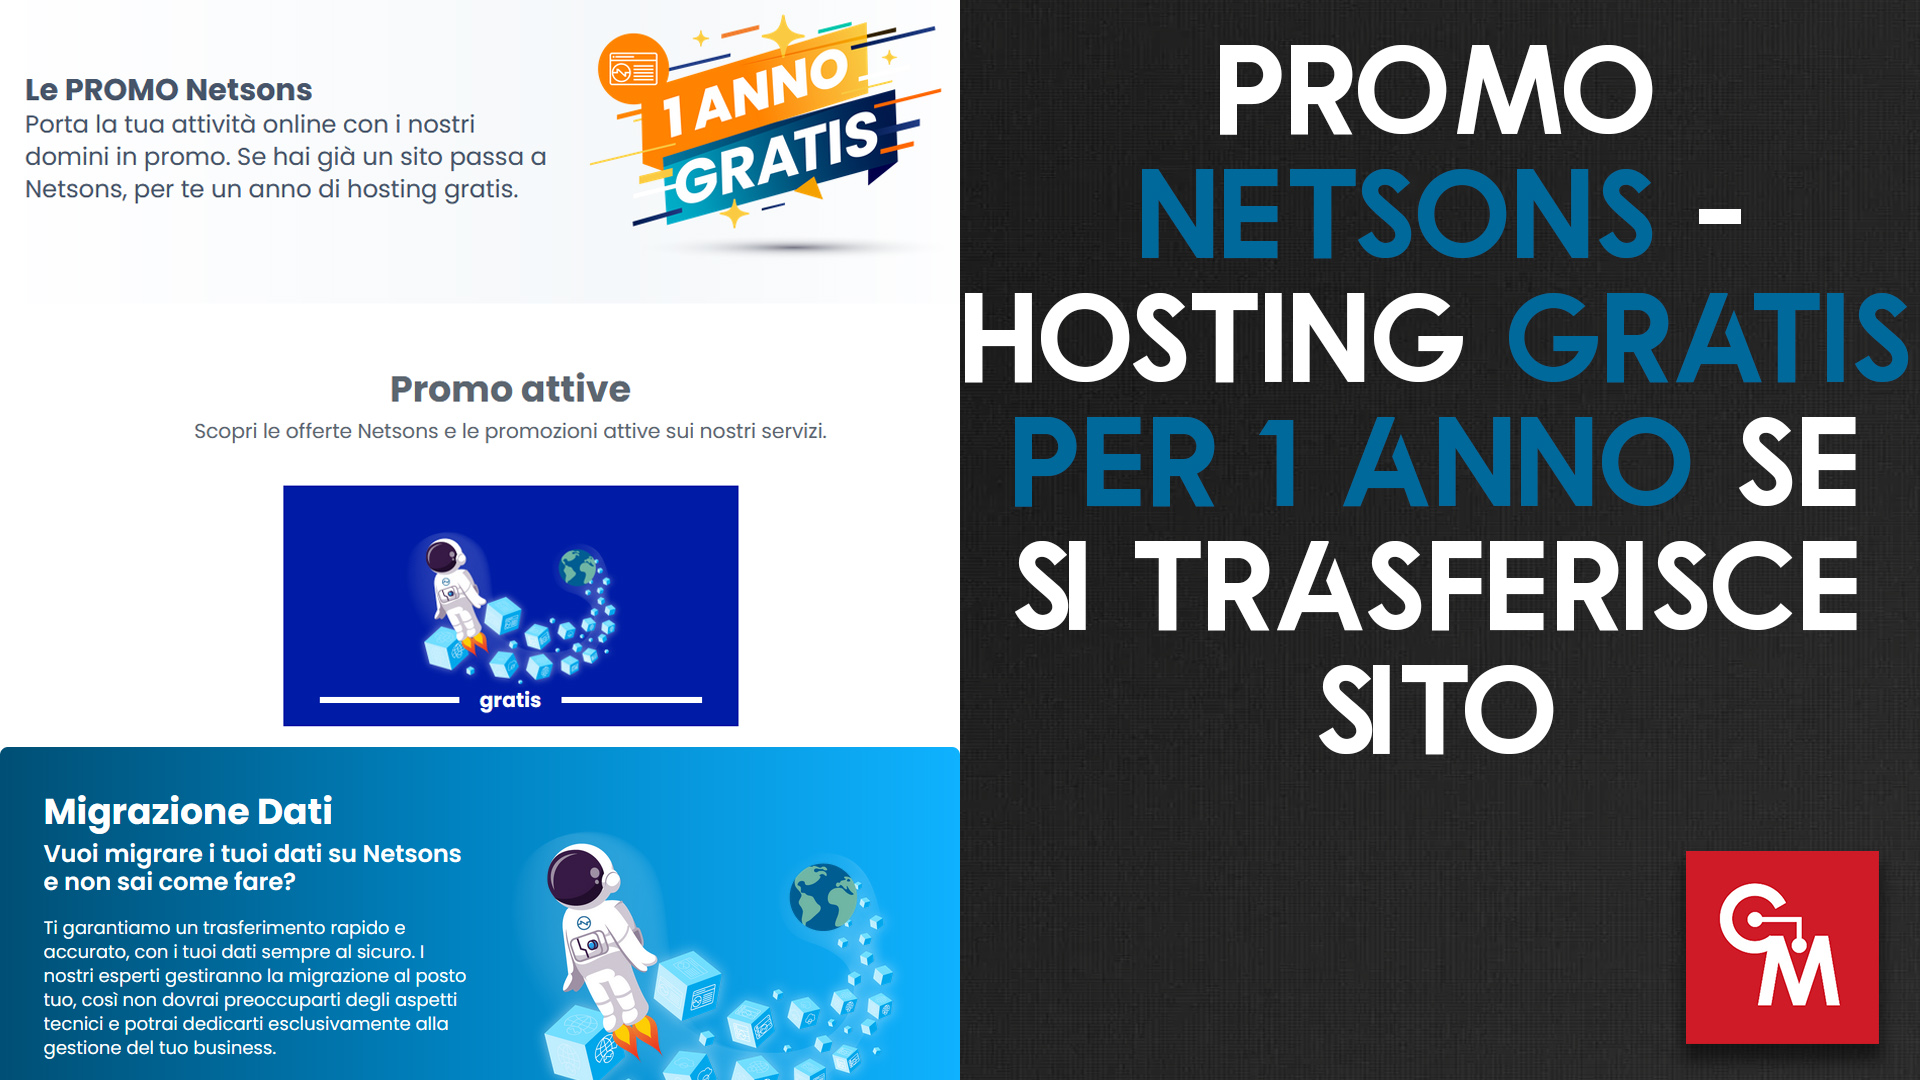 Promo Netsons - Hosting gratis per 1 anno se si trasferisce sito